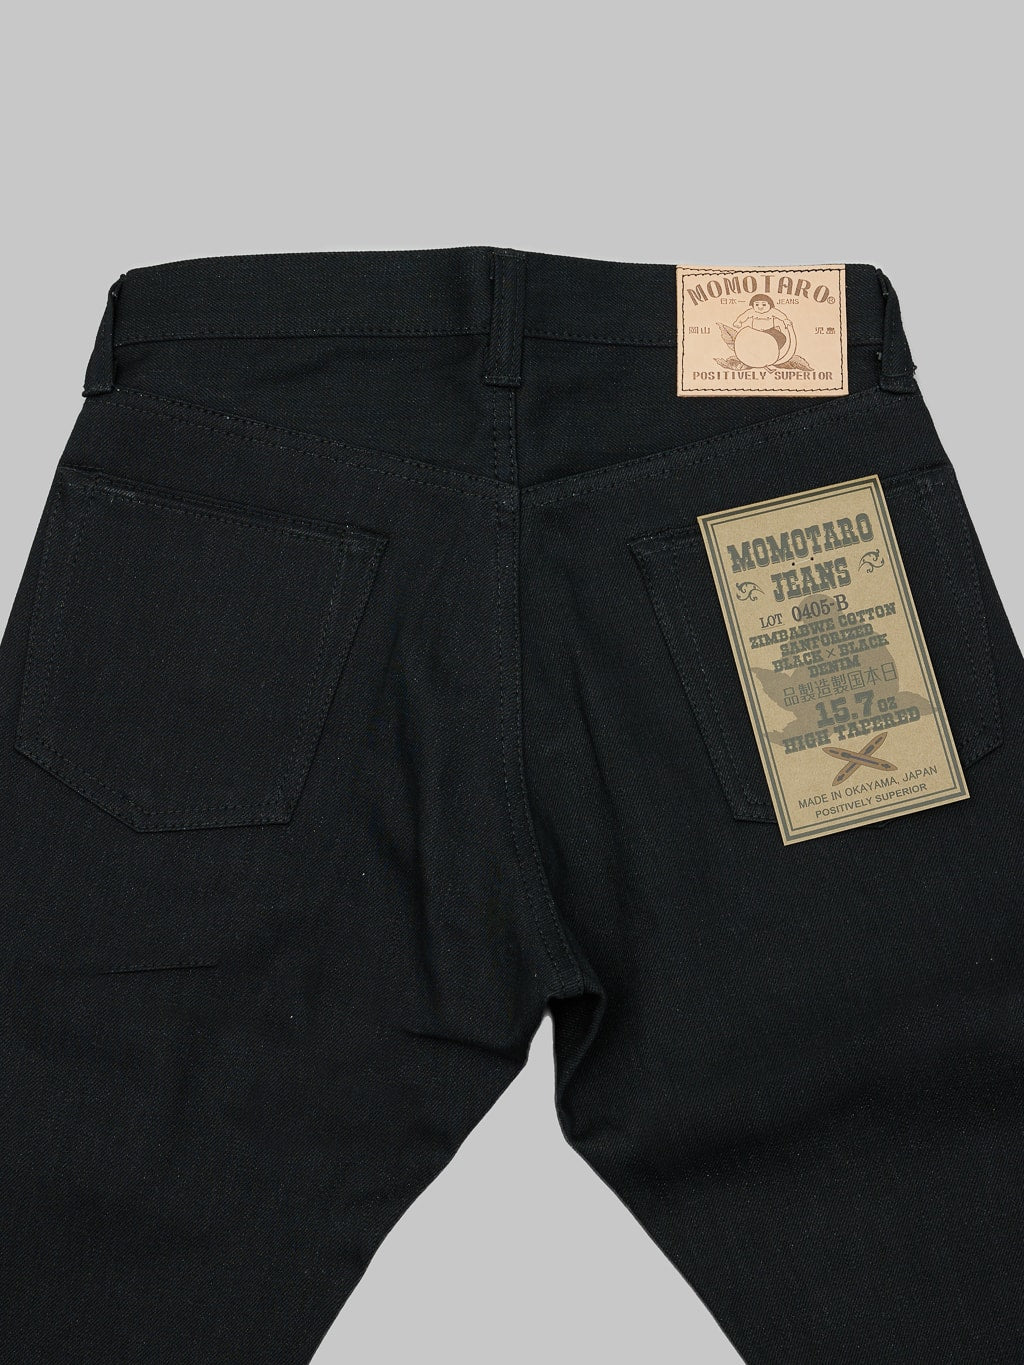 momotaro 0405b selvedge black denim high tapered jeans back details